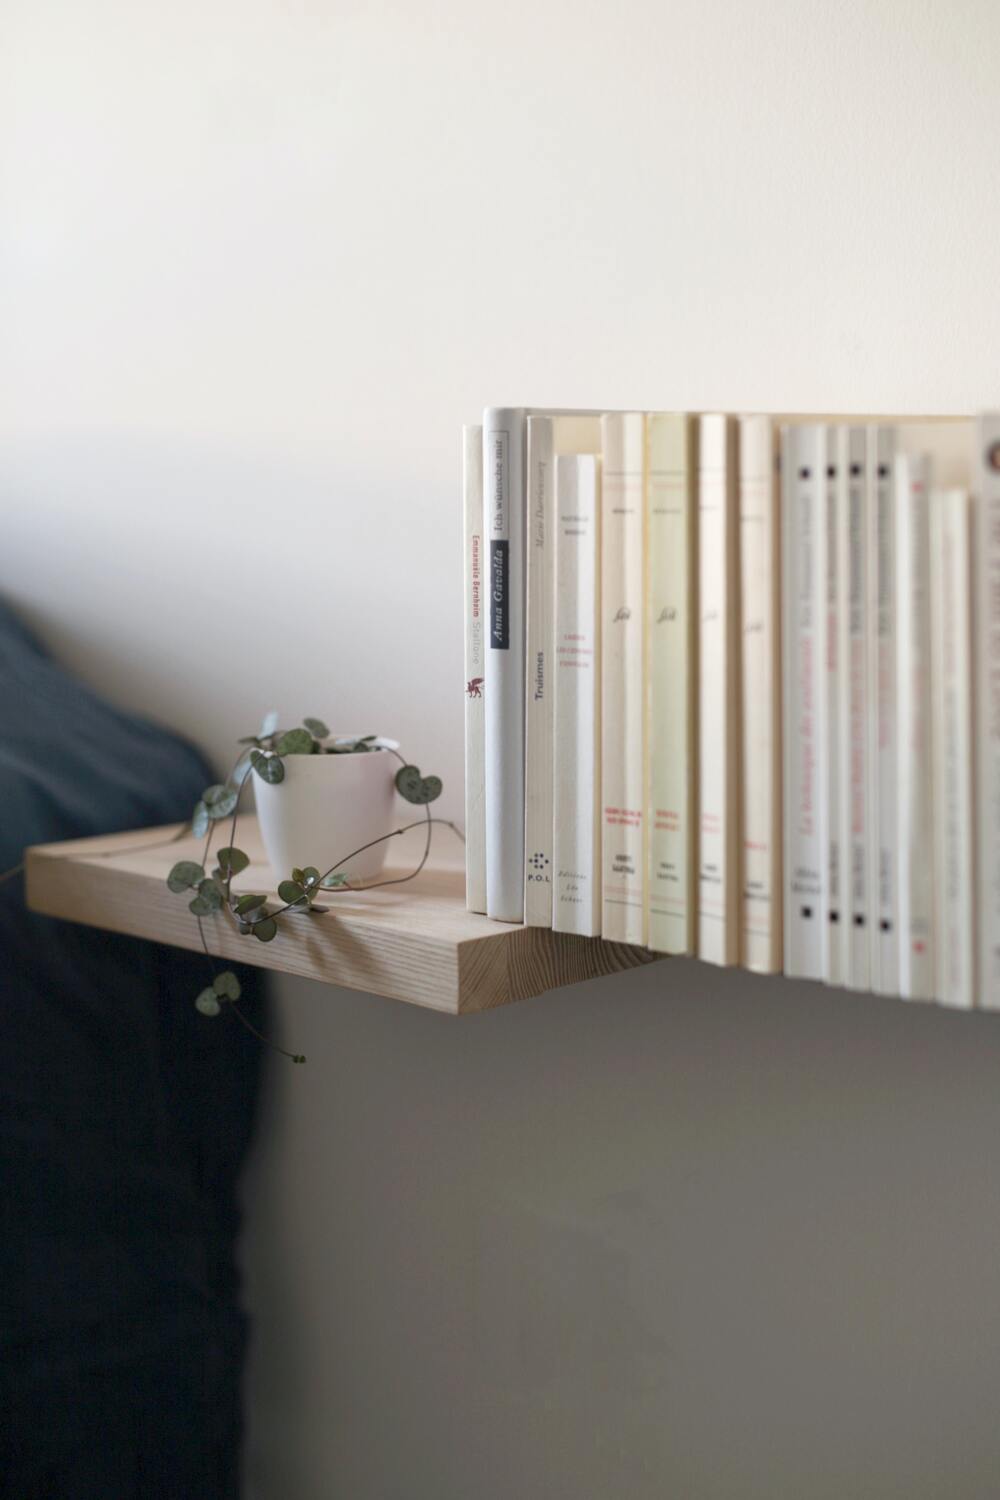 Leuchterpflanze in weissem Topf auf einem Holzregal, daneben Bücher scheinbar in der Luft schwebend